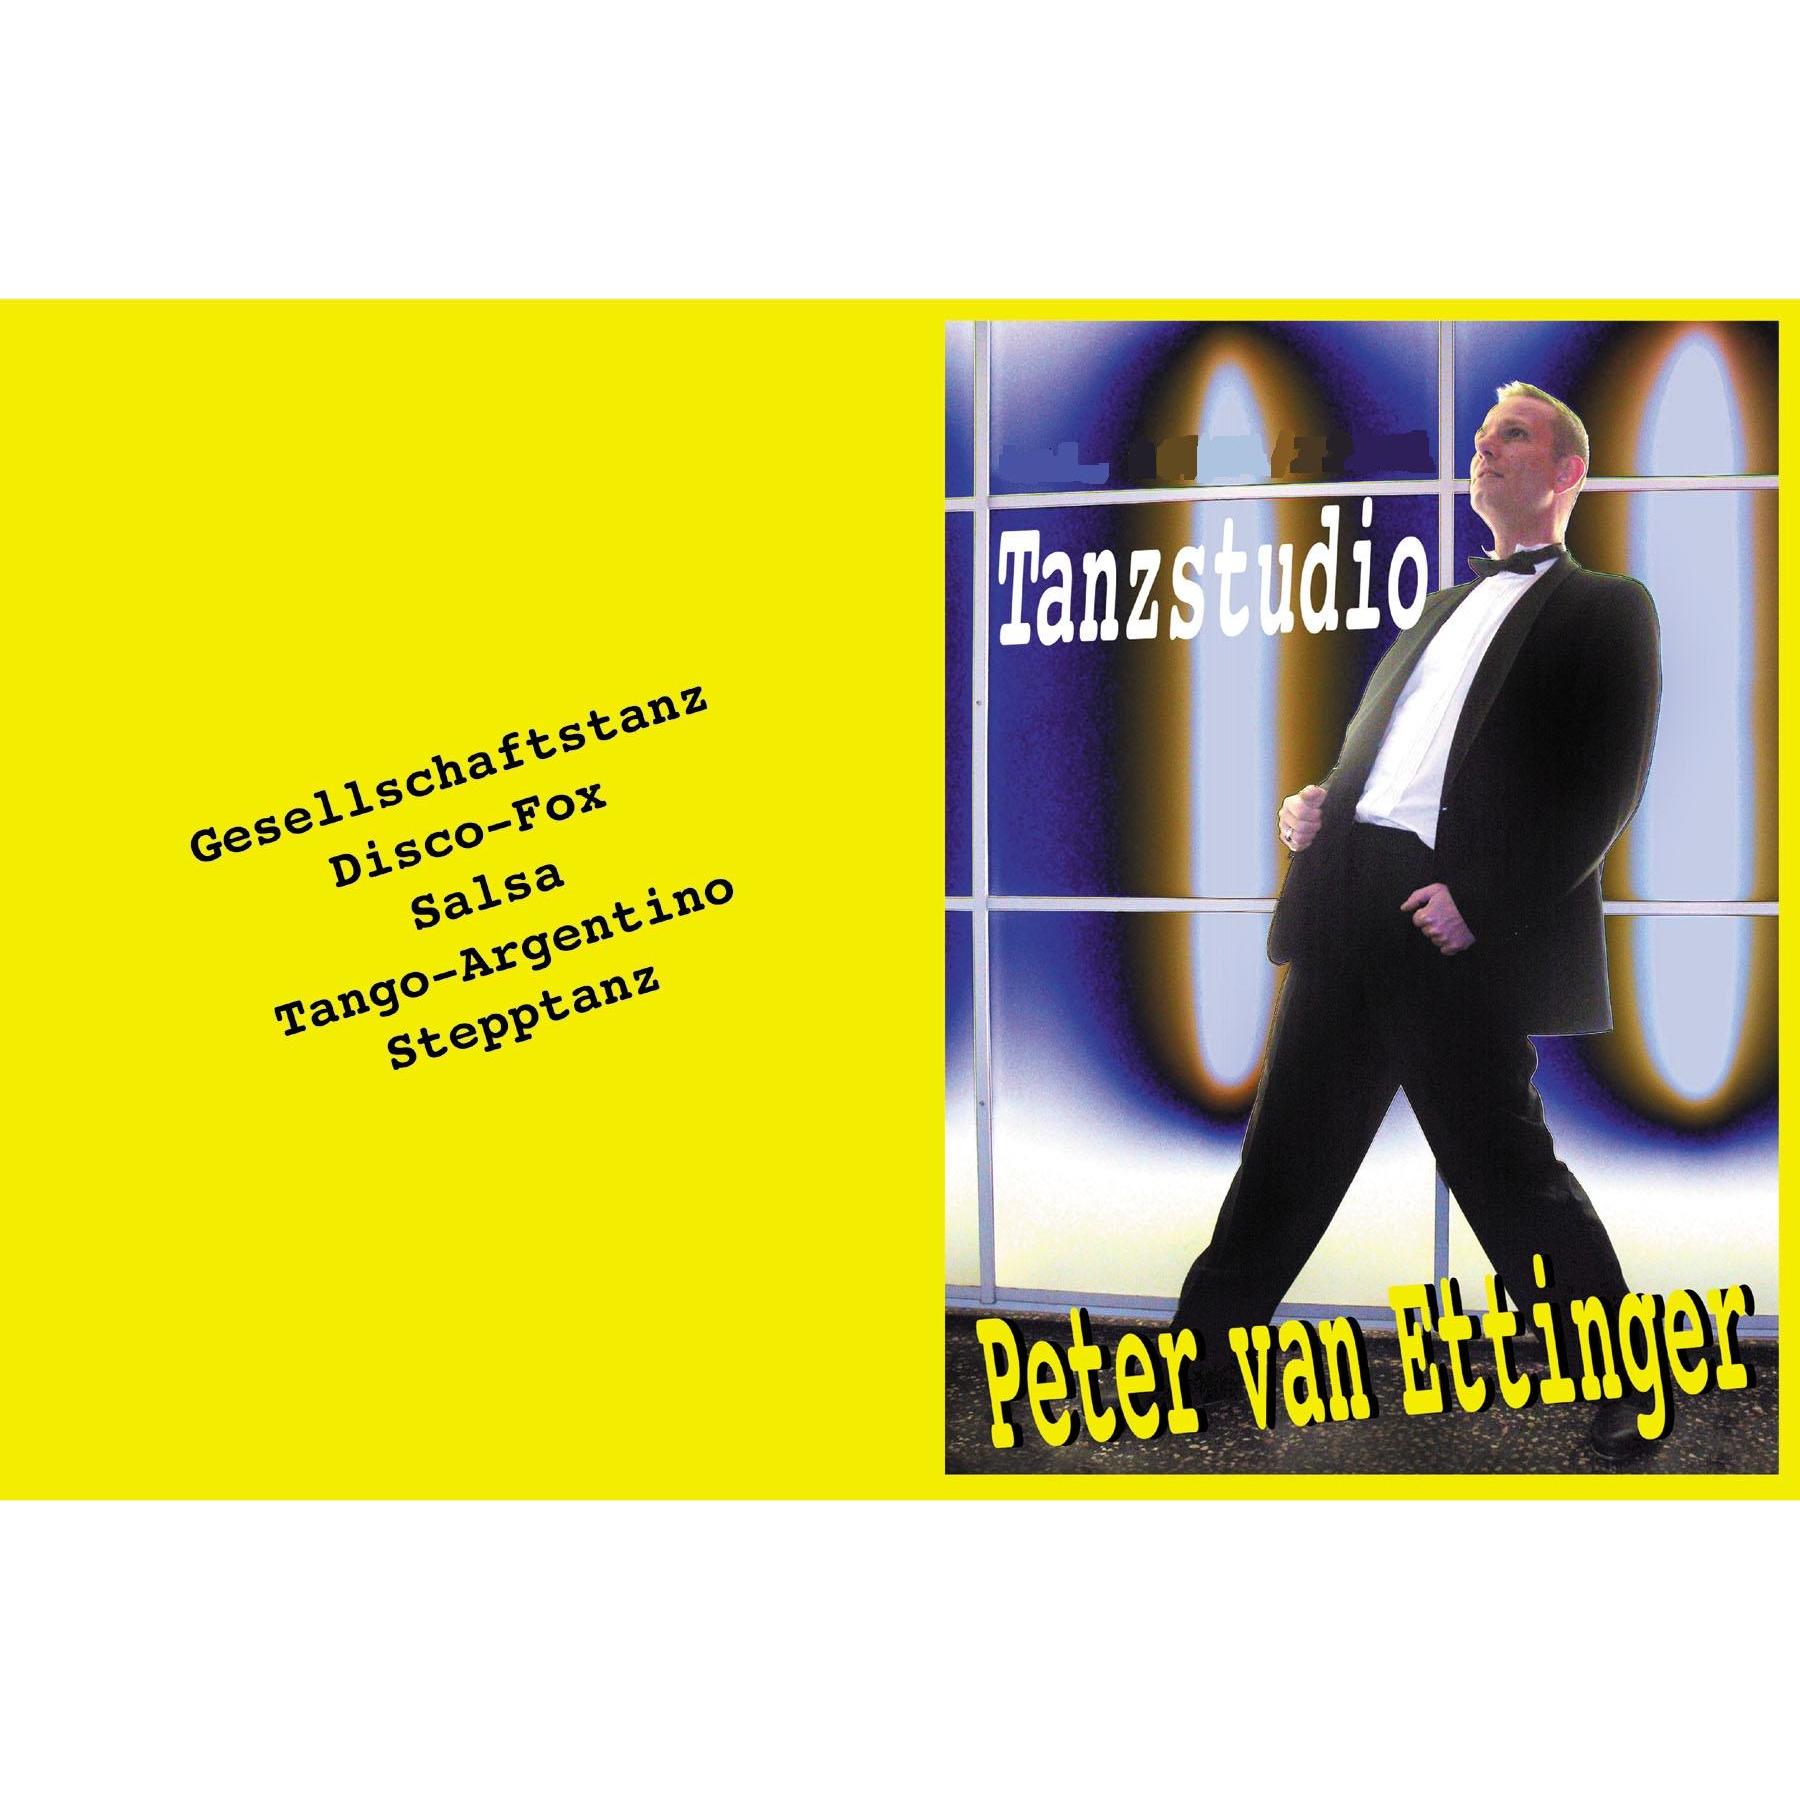 Tanzstudio Peter van Ettinger  